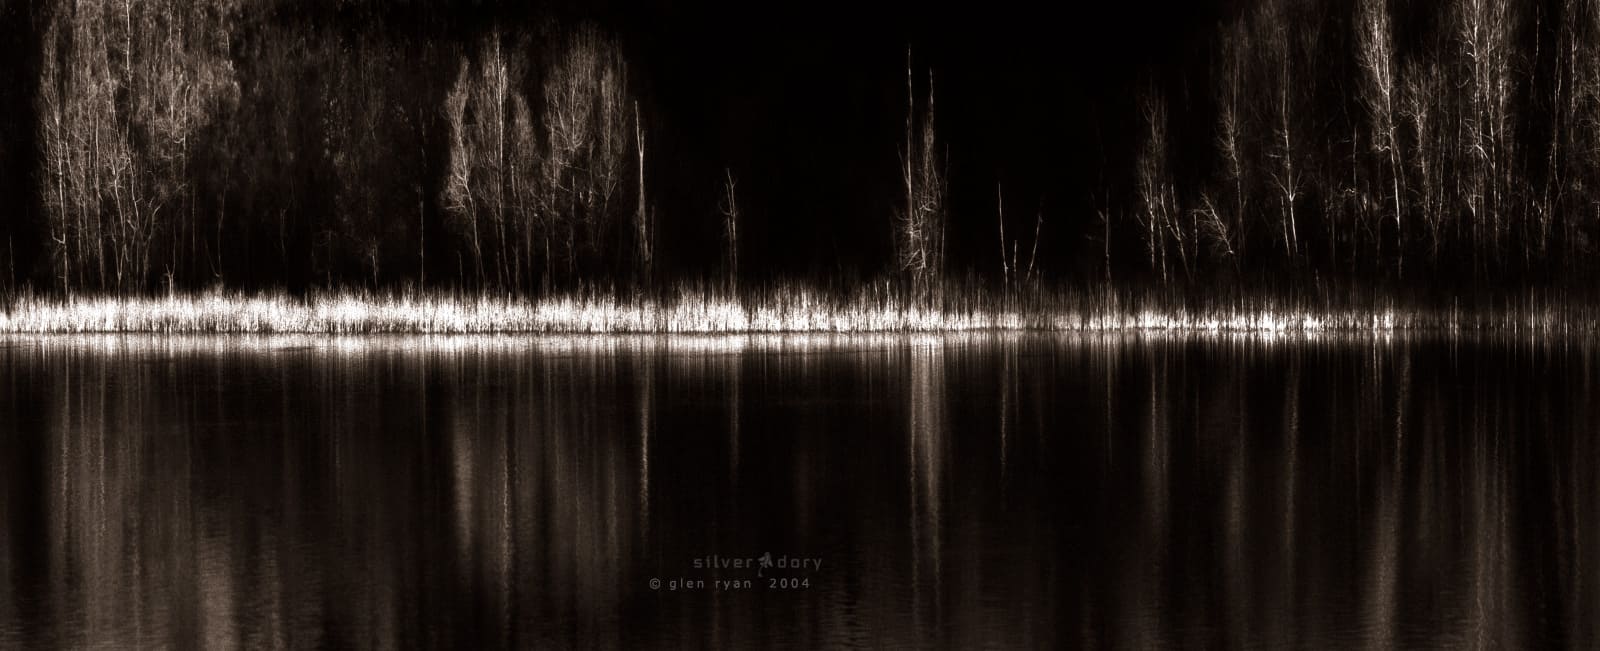 dusk | corunna lake